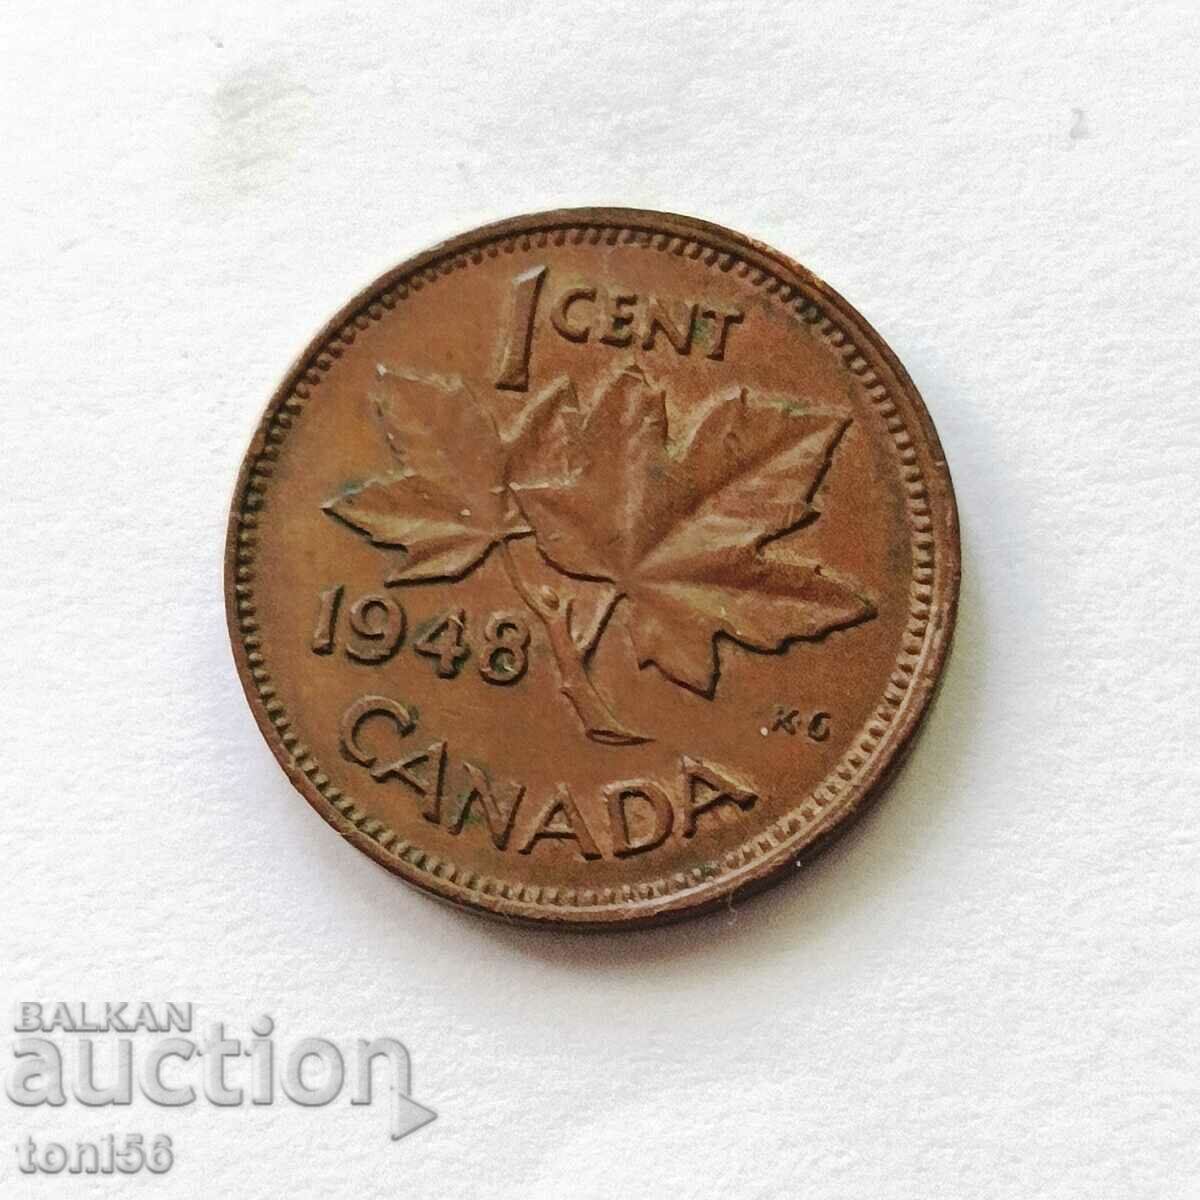 Canada 1 cent 1948